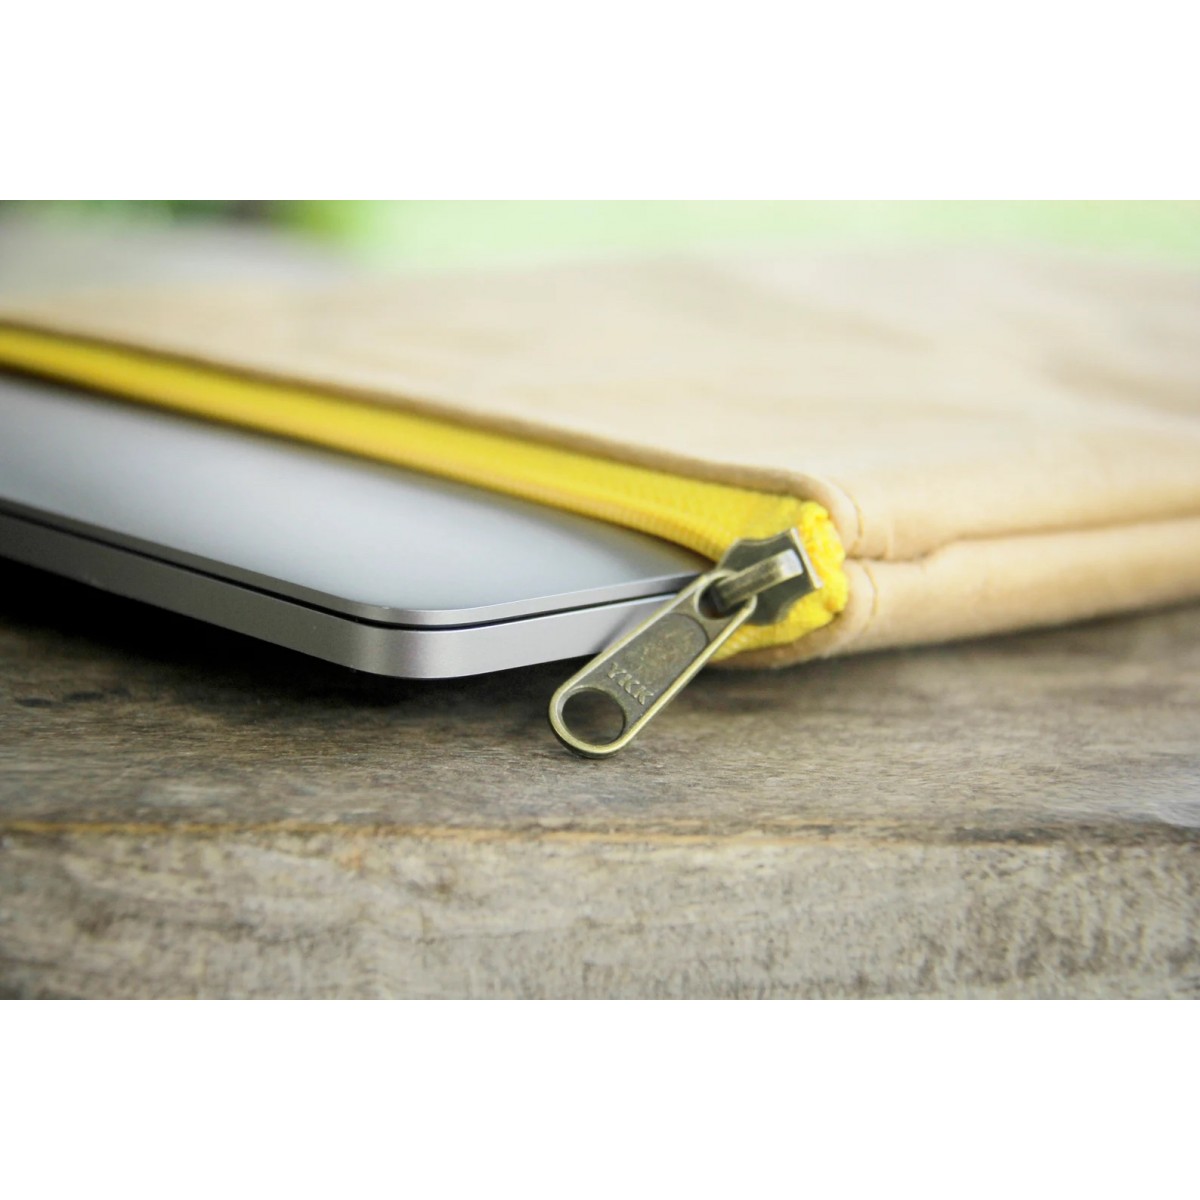 Laptop-Hülle 13 " - 14 " Zoll aus Kraft Papier mit gelbem Zipper